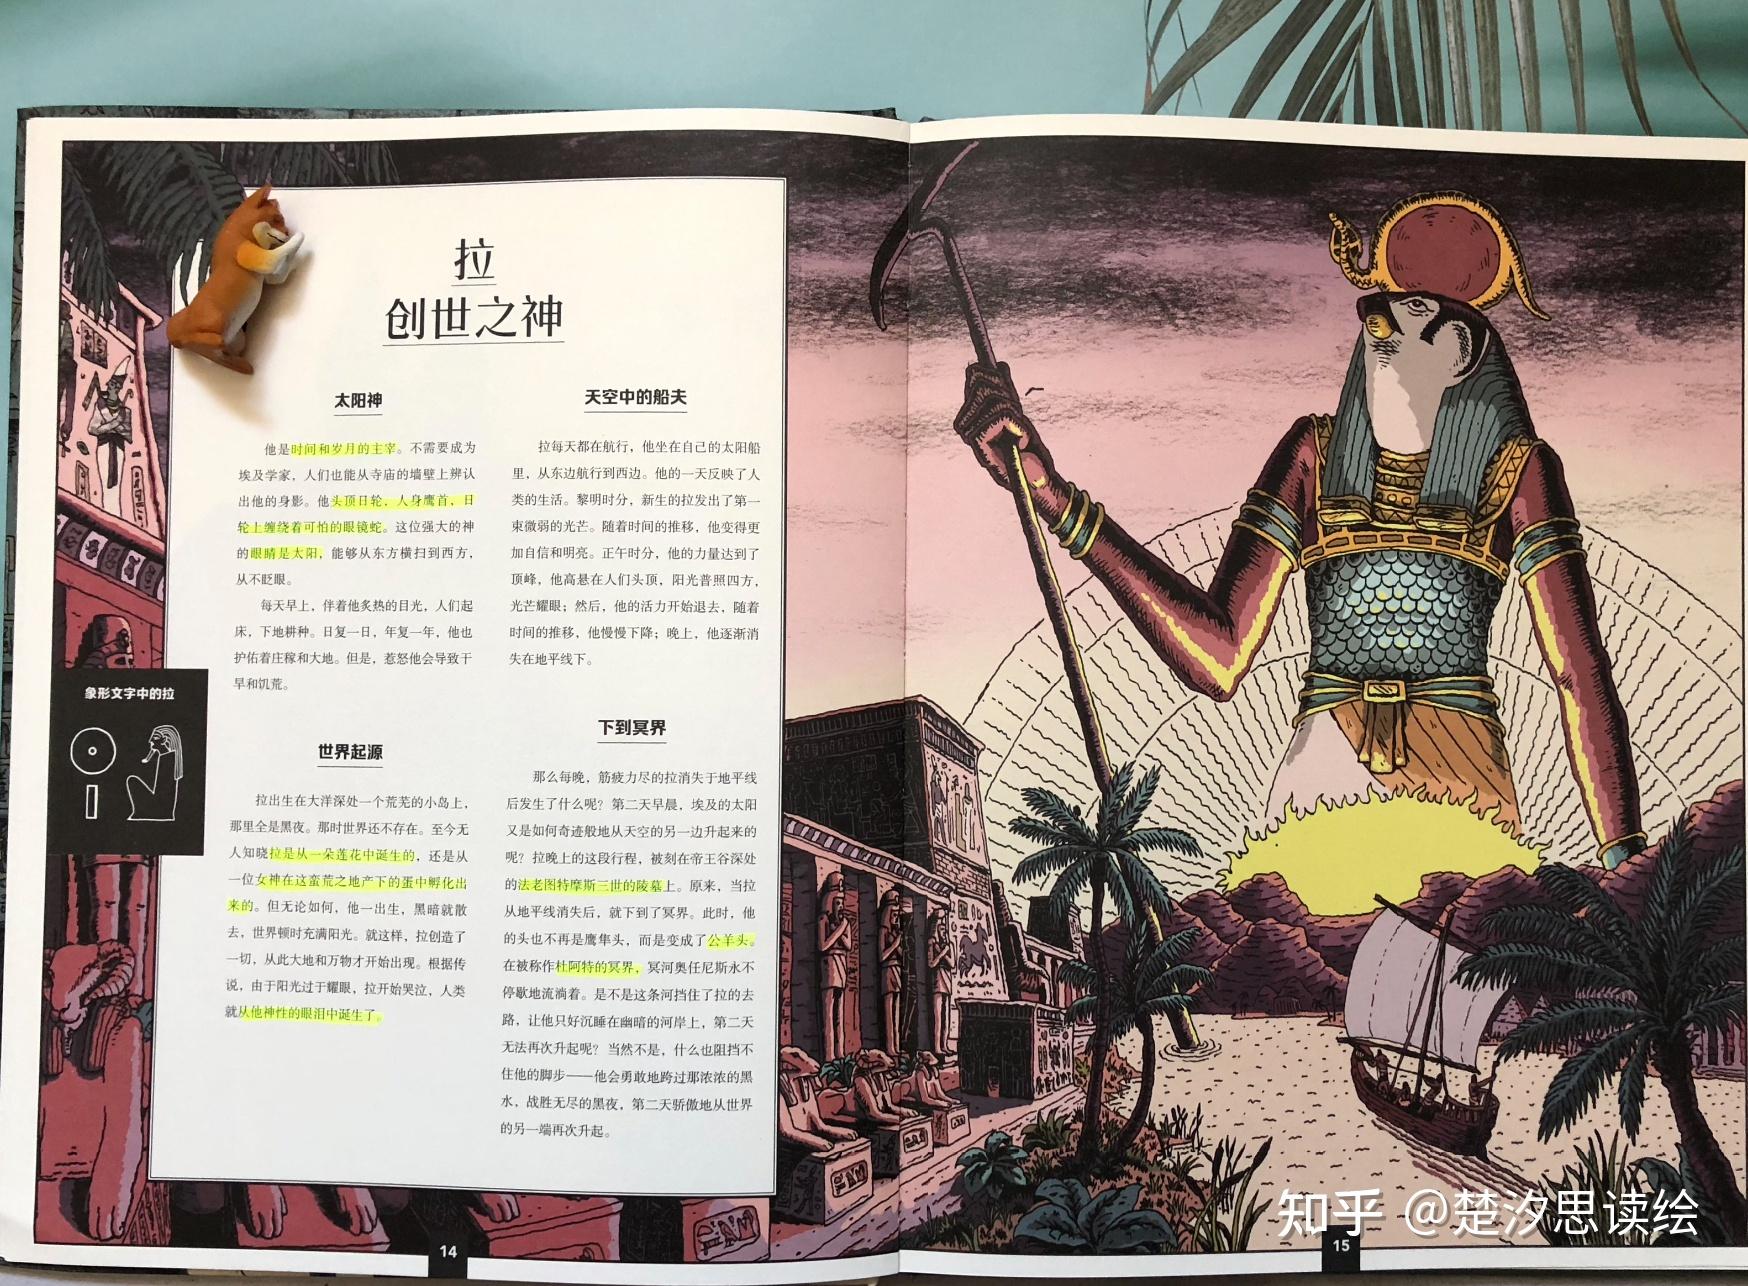 尼罗河畔倾听19位《埃及众神》故事,领悟古埃及生死观和艺术风格